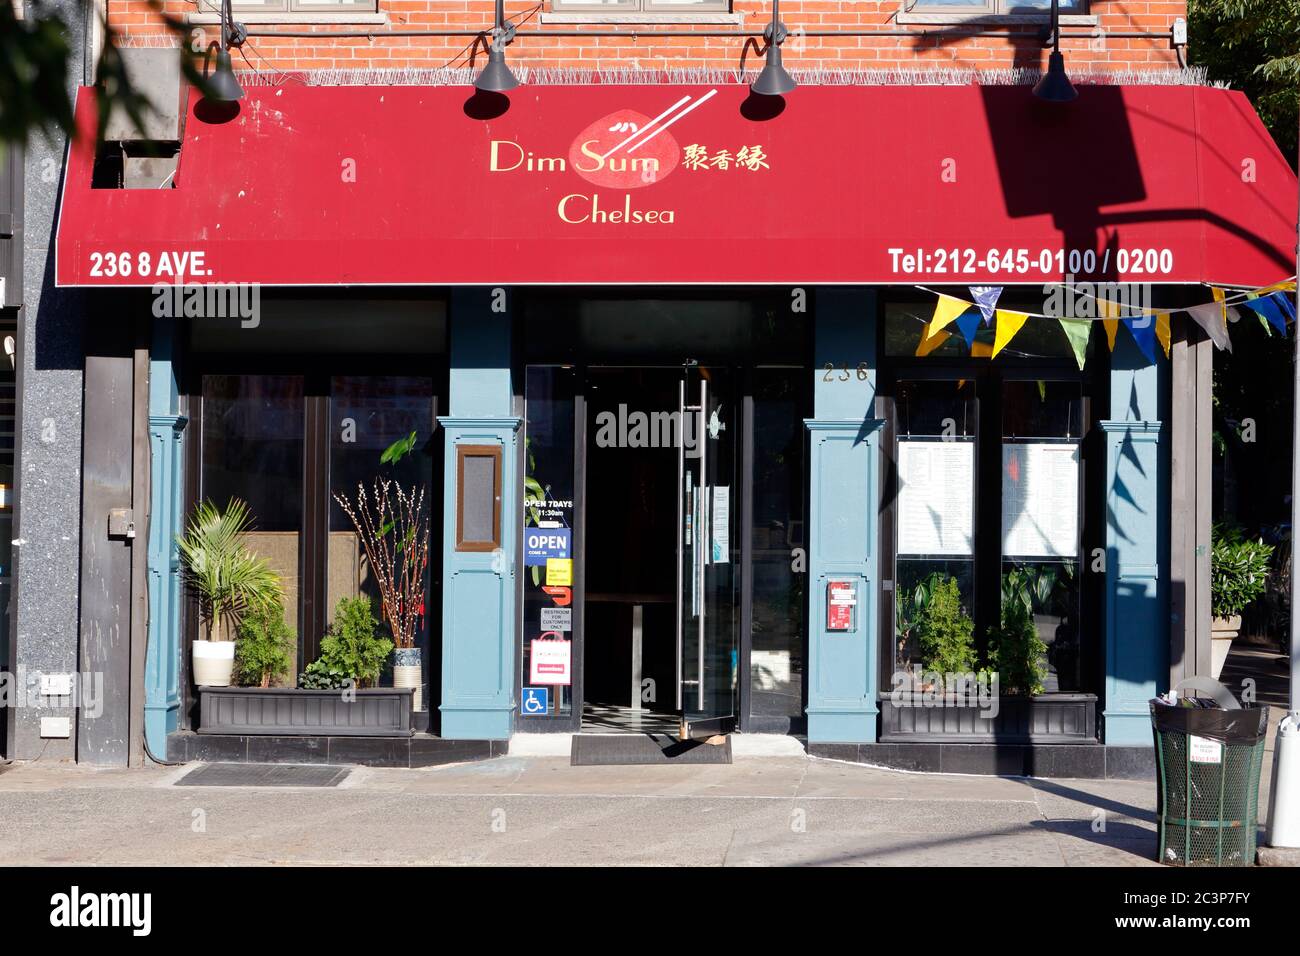 Dim Sum Chelsea, 236 8th Ave, New York, NY. Außenfassade eines chinesischen Restaurants im Chelsea-Viertel von Manhattan. Stockfoto